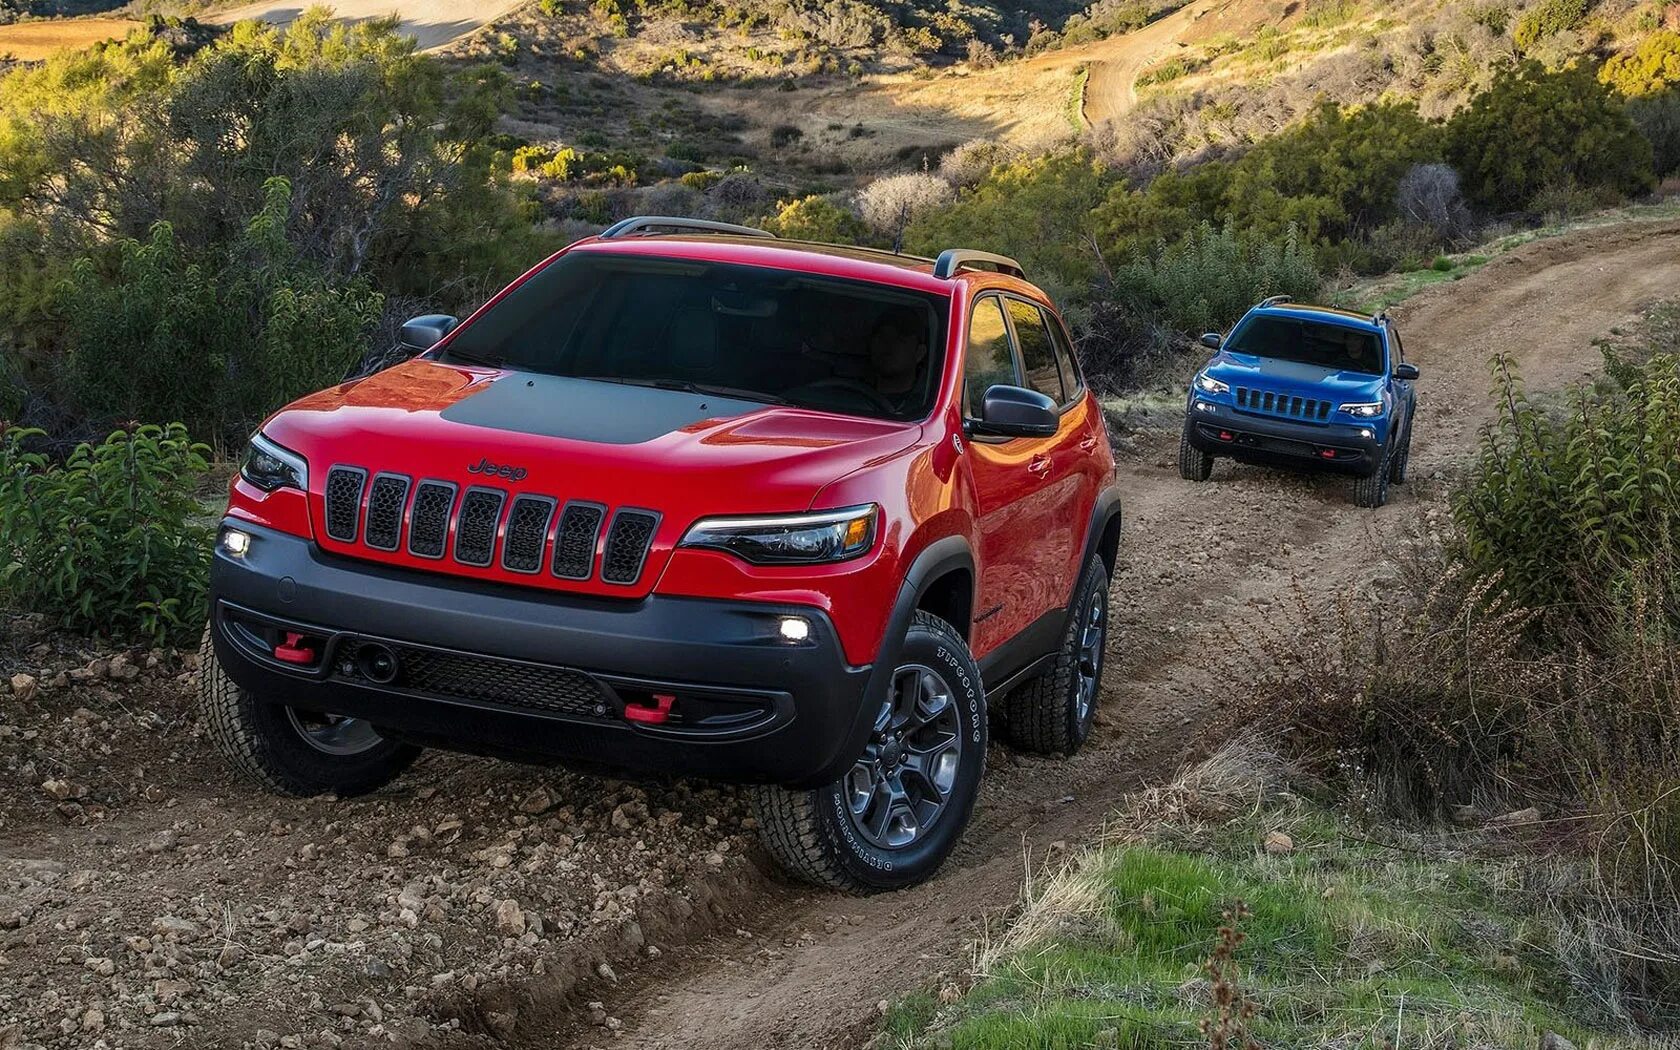 Cherokee trailhawk. Jeep Cherokee Trailhawk 2020. Jeep Grand Cherokee 2019. Jeep Grand Cherokee Trailhawk 2020. Jeep Cherokee 5 Trailhawk.